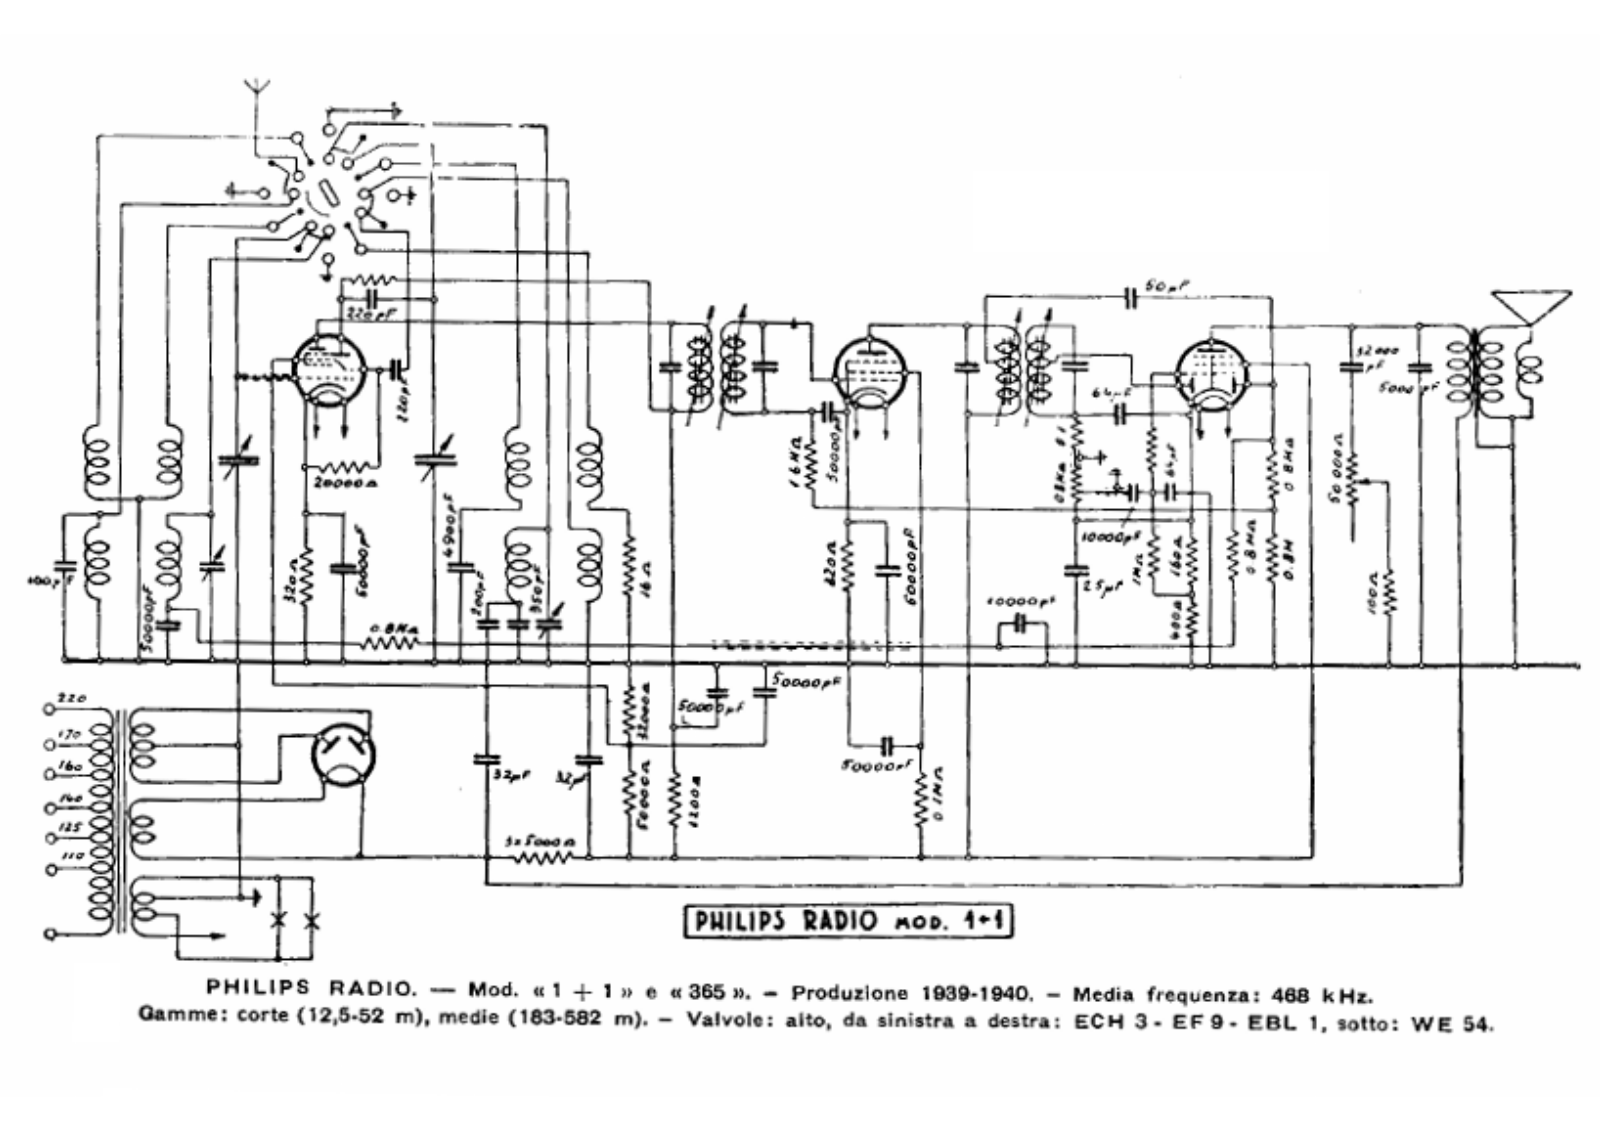 Philips 1+1 schematic